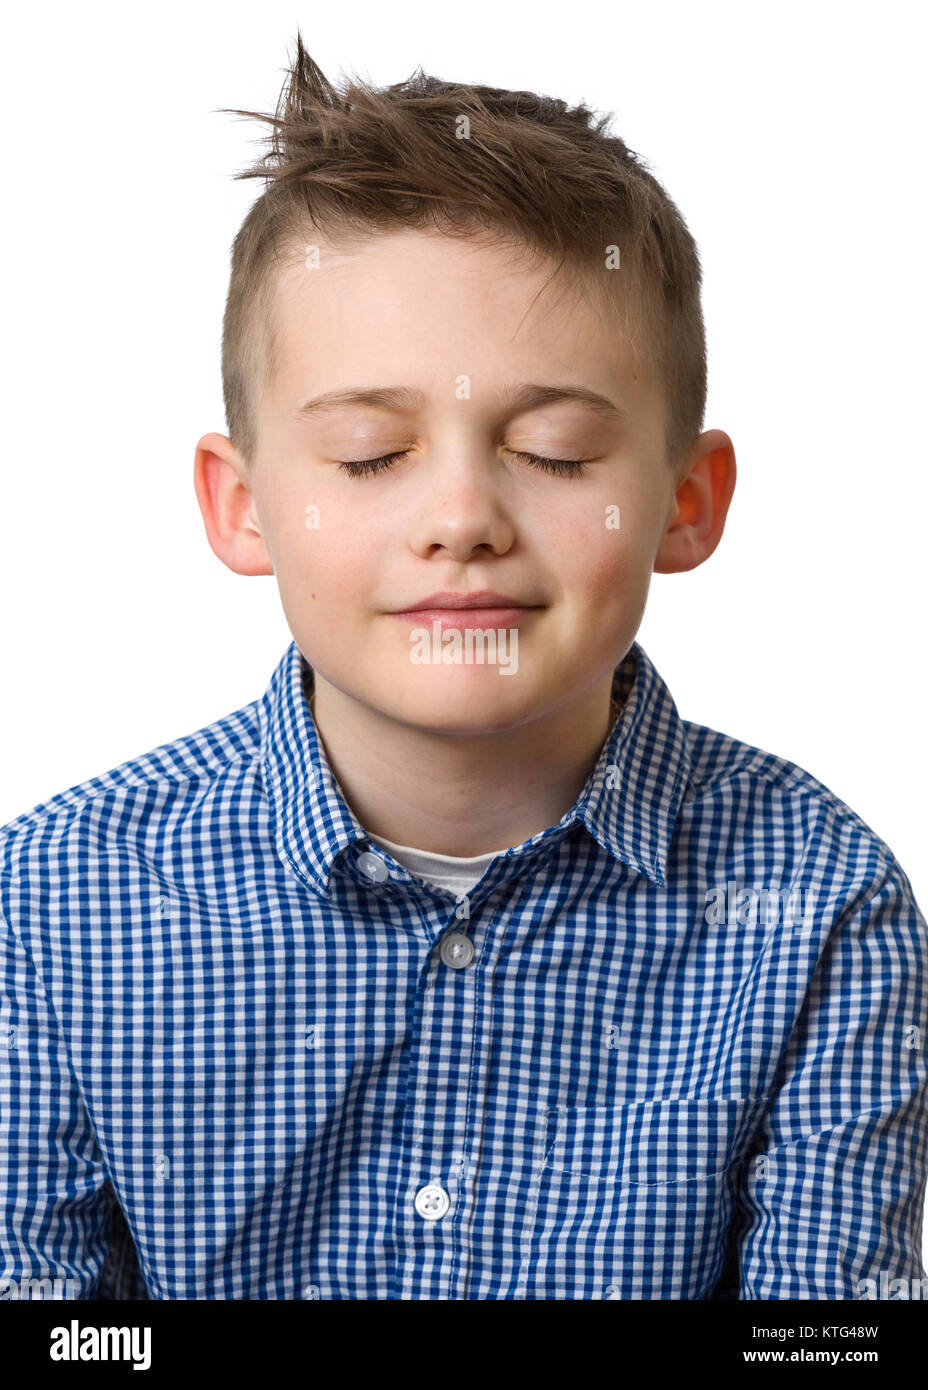 Jungen kaukasischen Jungen mit geschlossenen Augen, Kopf und Schulter Portrait auf weißem Hintergrund Model Release: Ja. Property Release: Nein. Stockfoto